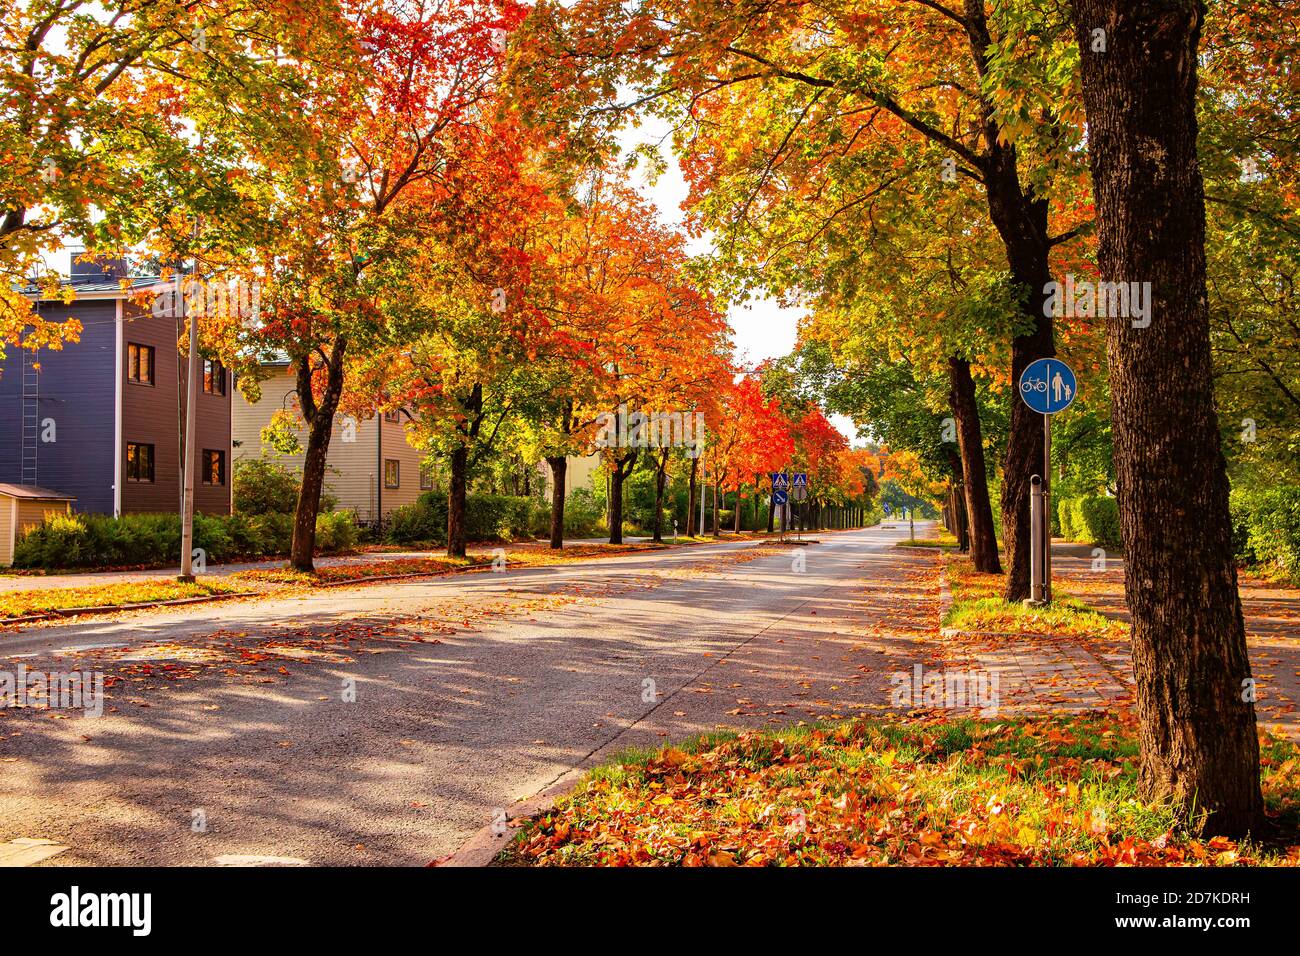 Scène d'automne avec rue en ville. Vue colorée et lumineuse sur le feuillage d'automne dans une ville. Rouge, orange, feuilles dorées. Rue bordée d'arbres colorés d'automne Banque D'Images